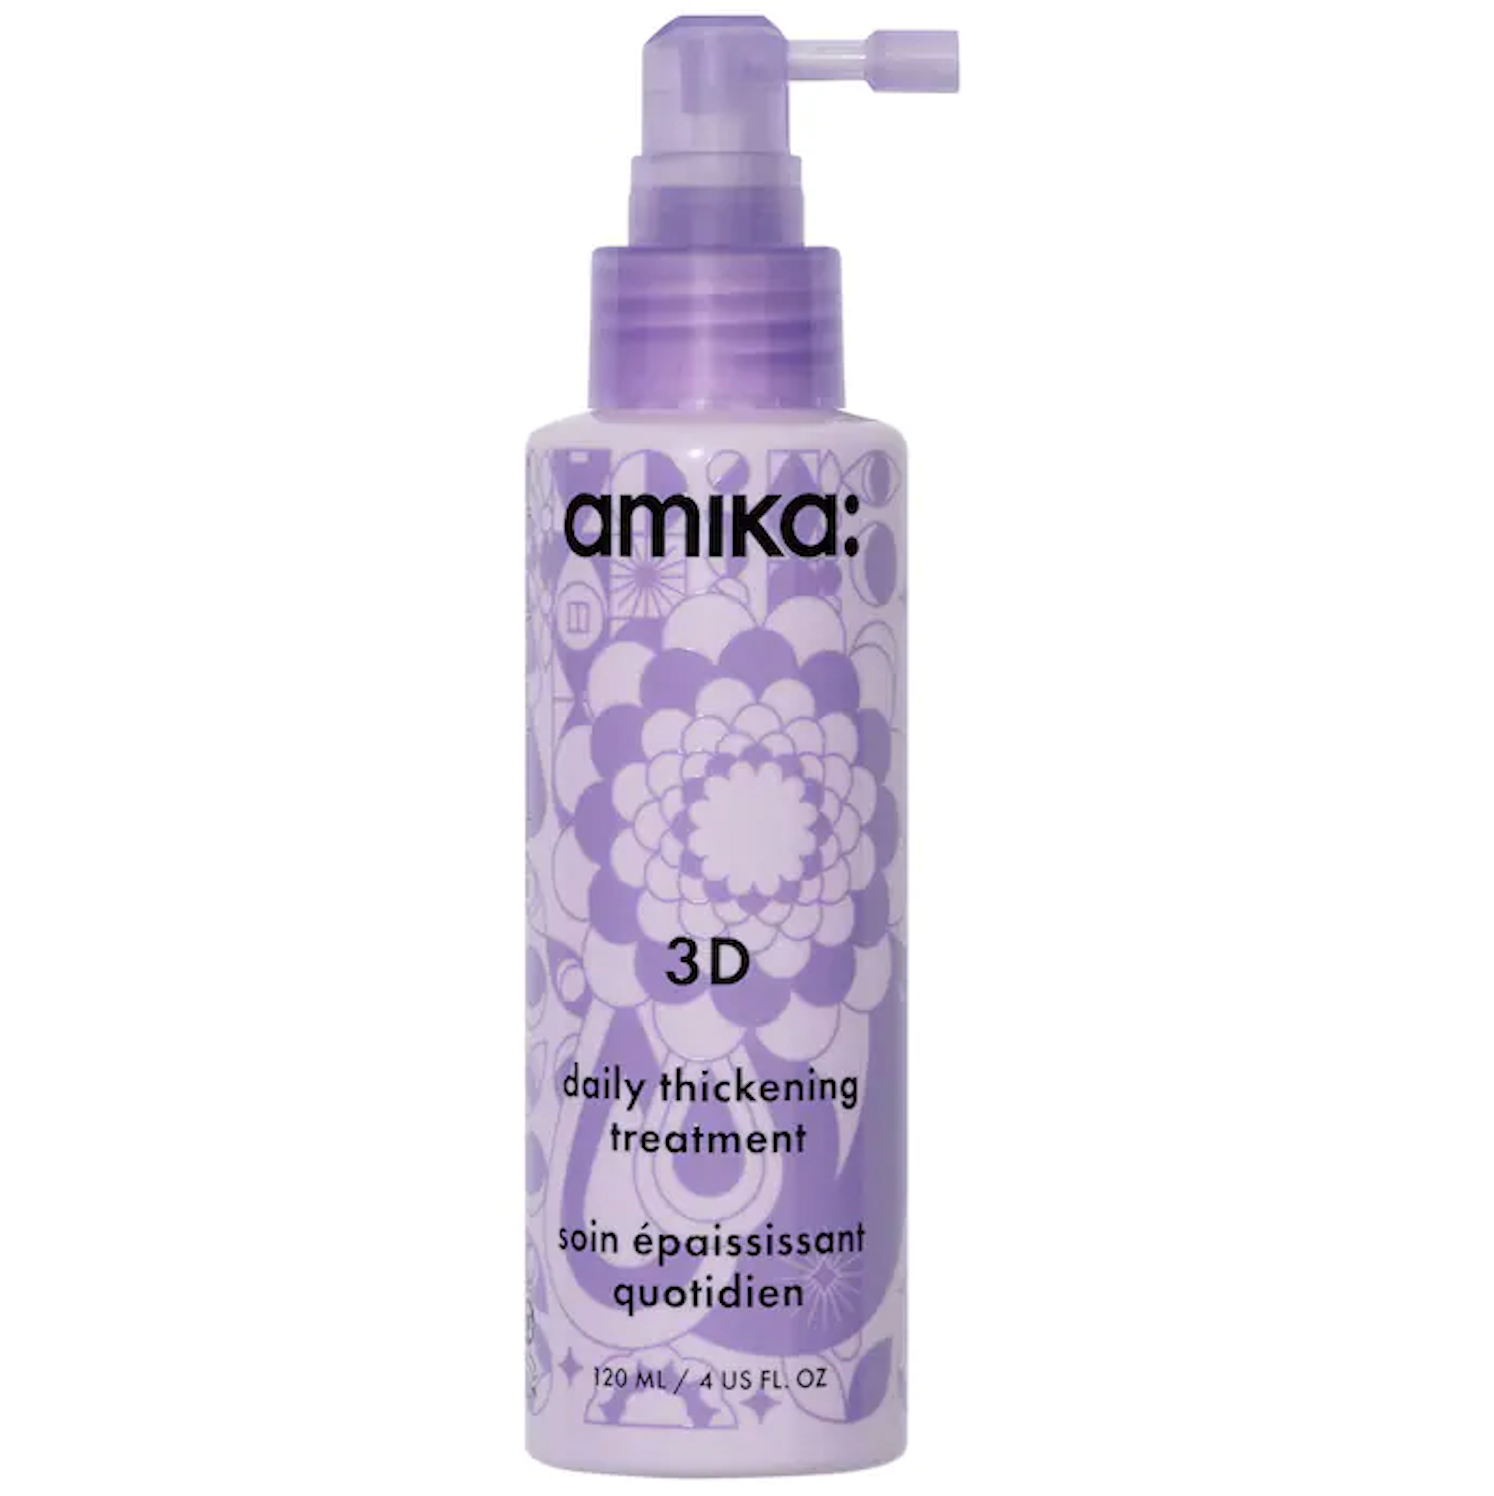 AMIKA - 3D Soin Épaississant Quotidien 120ml (4 oz)